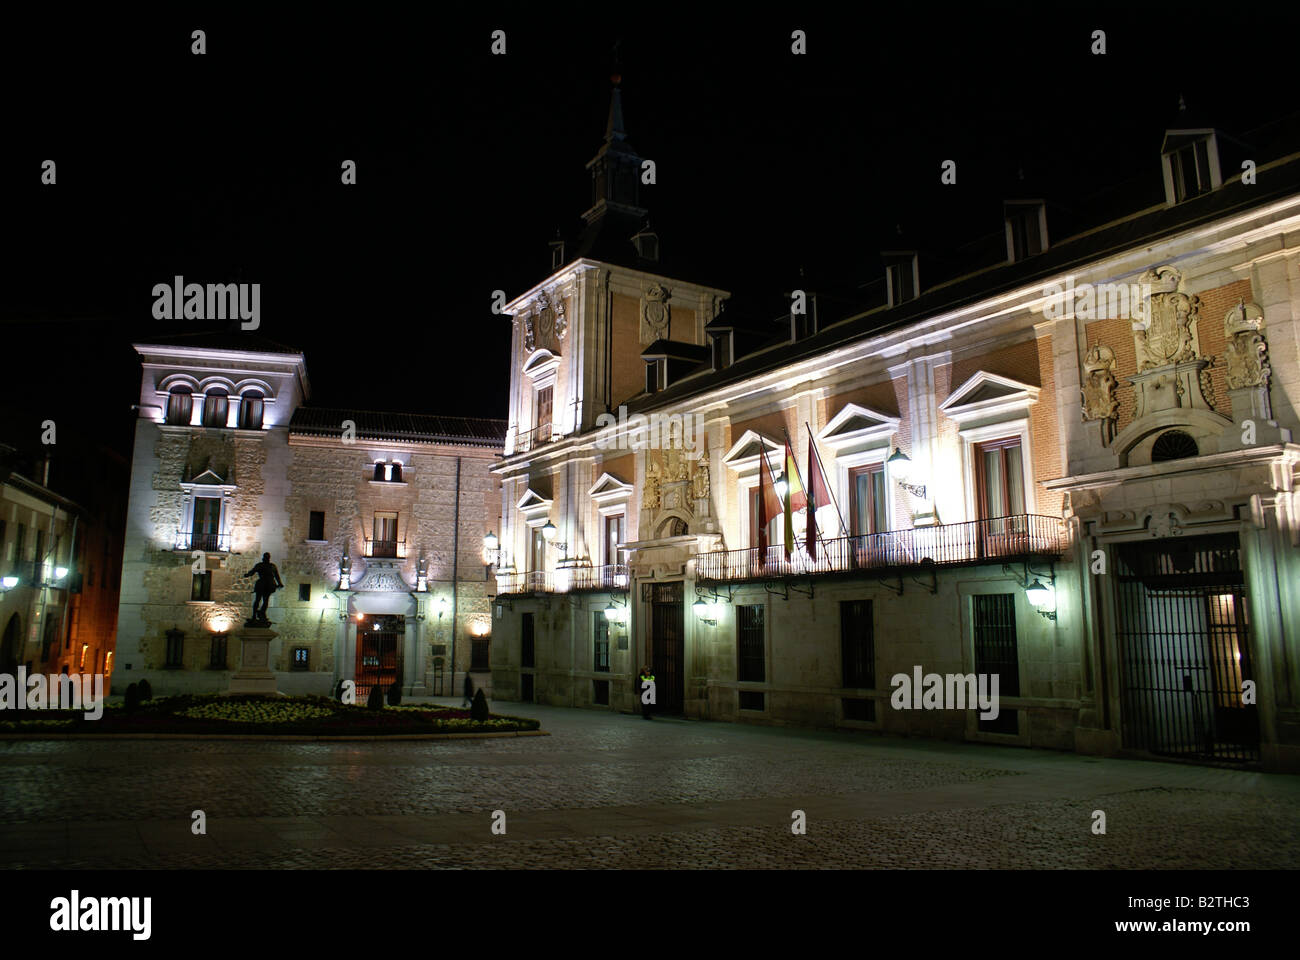 Madrid town hall, in Plaza de la Villa, by night Stock Photo